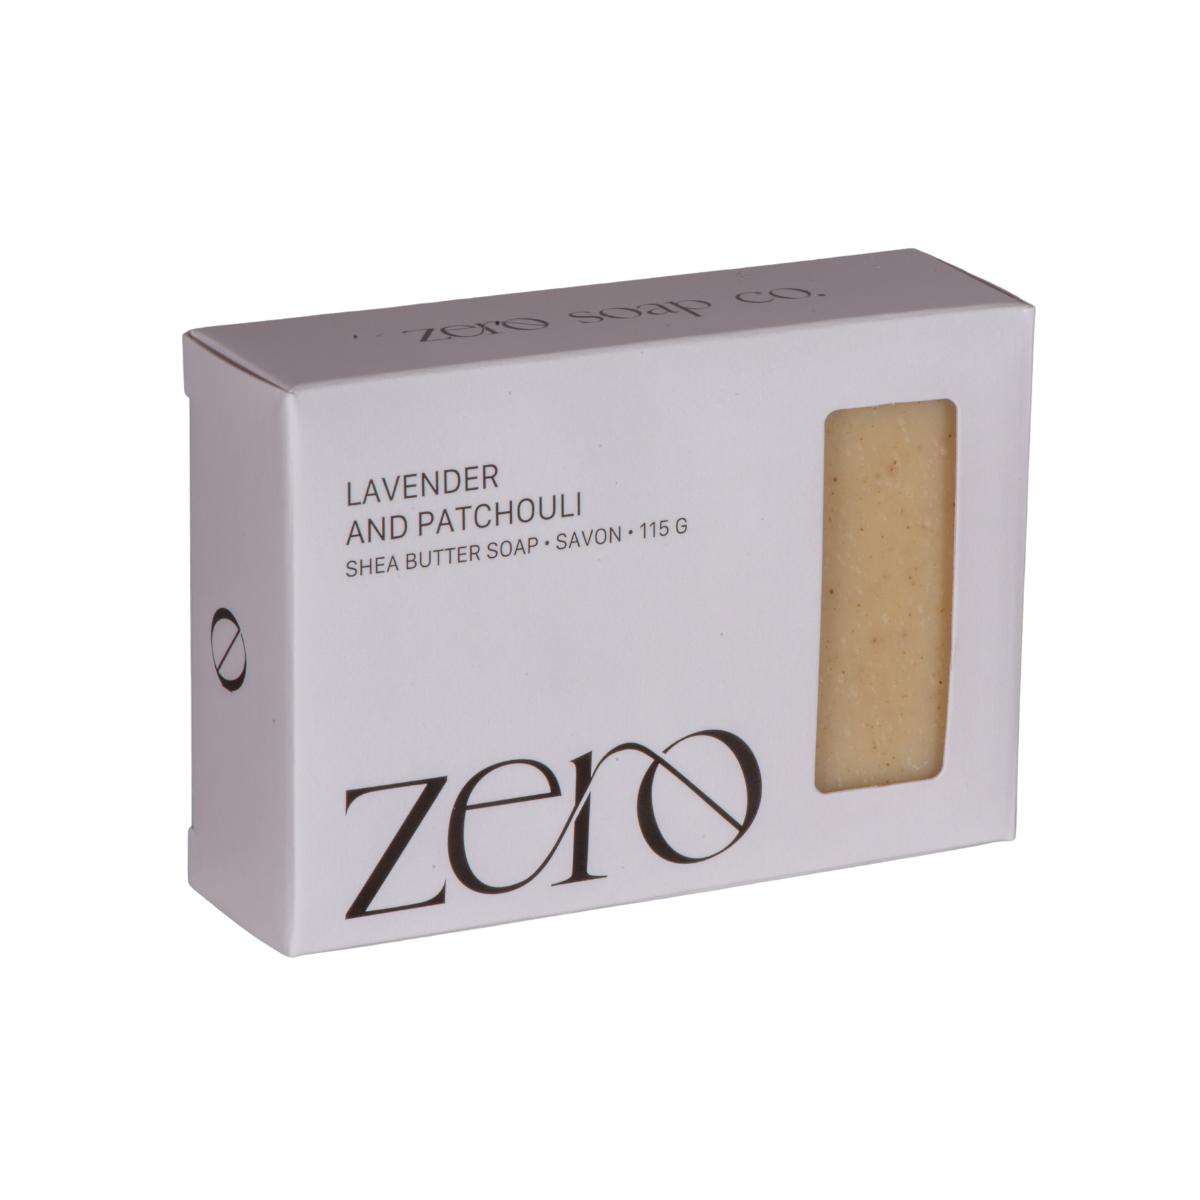 Lavender & Patchouli Soap Bar by Zero Soap Co.